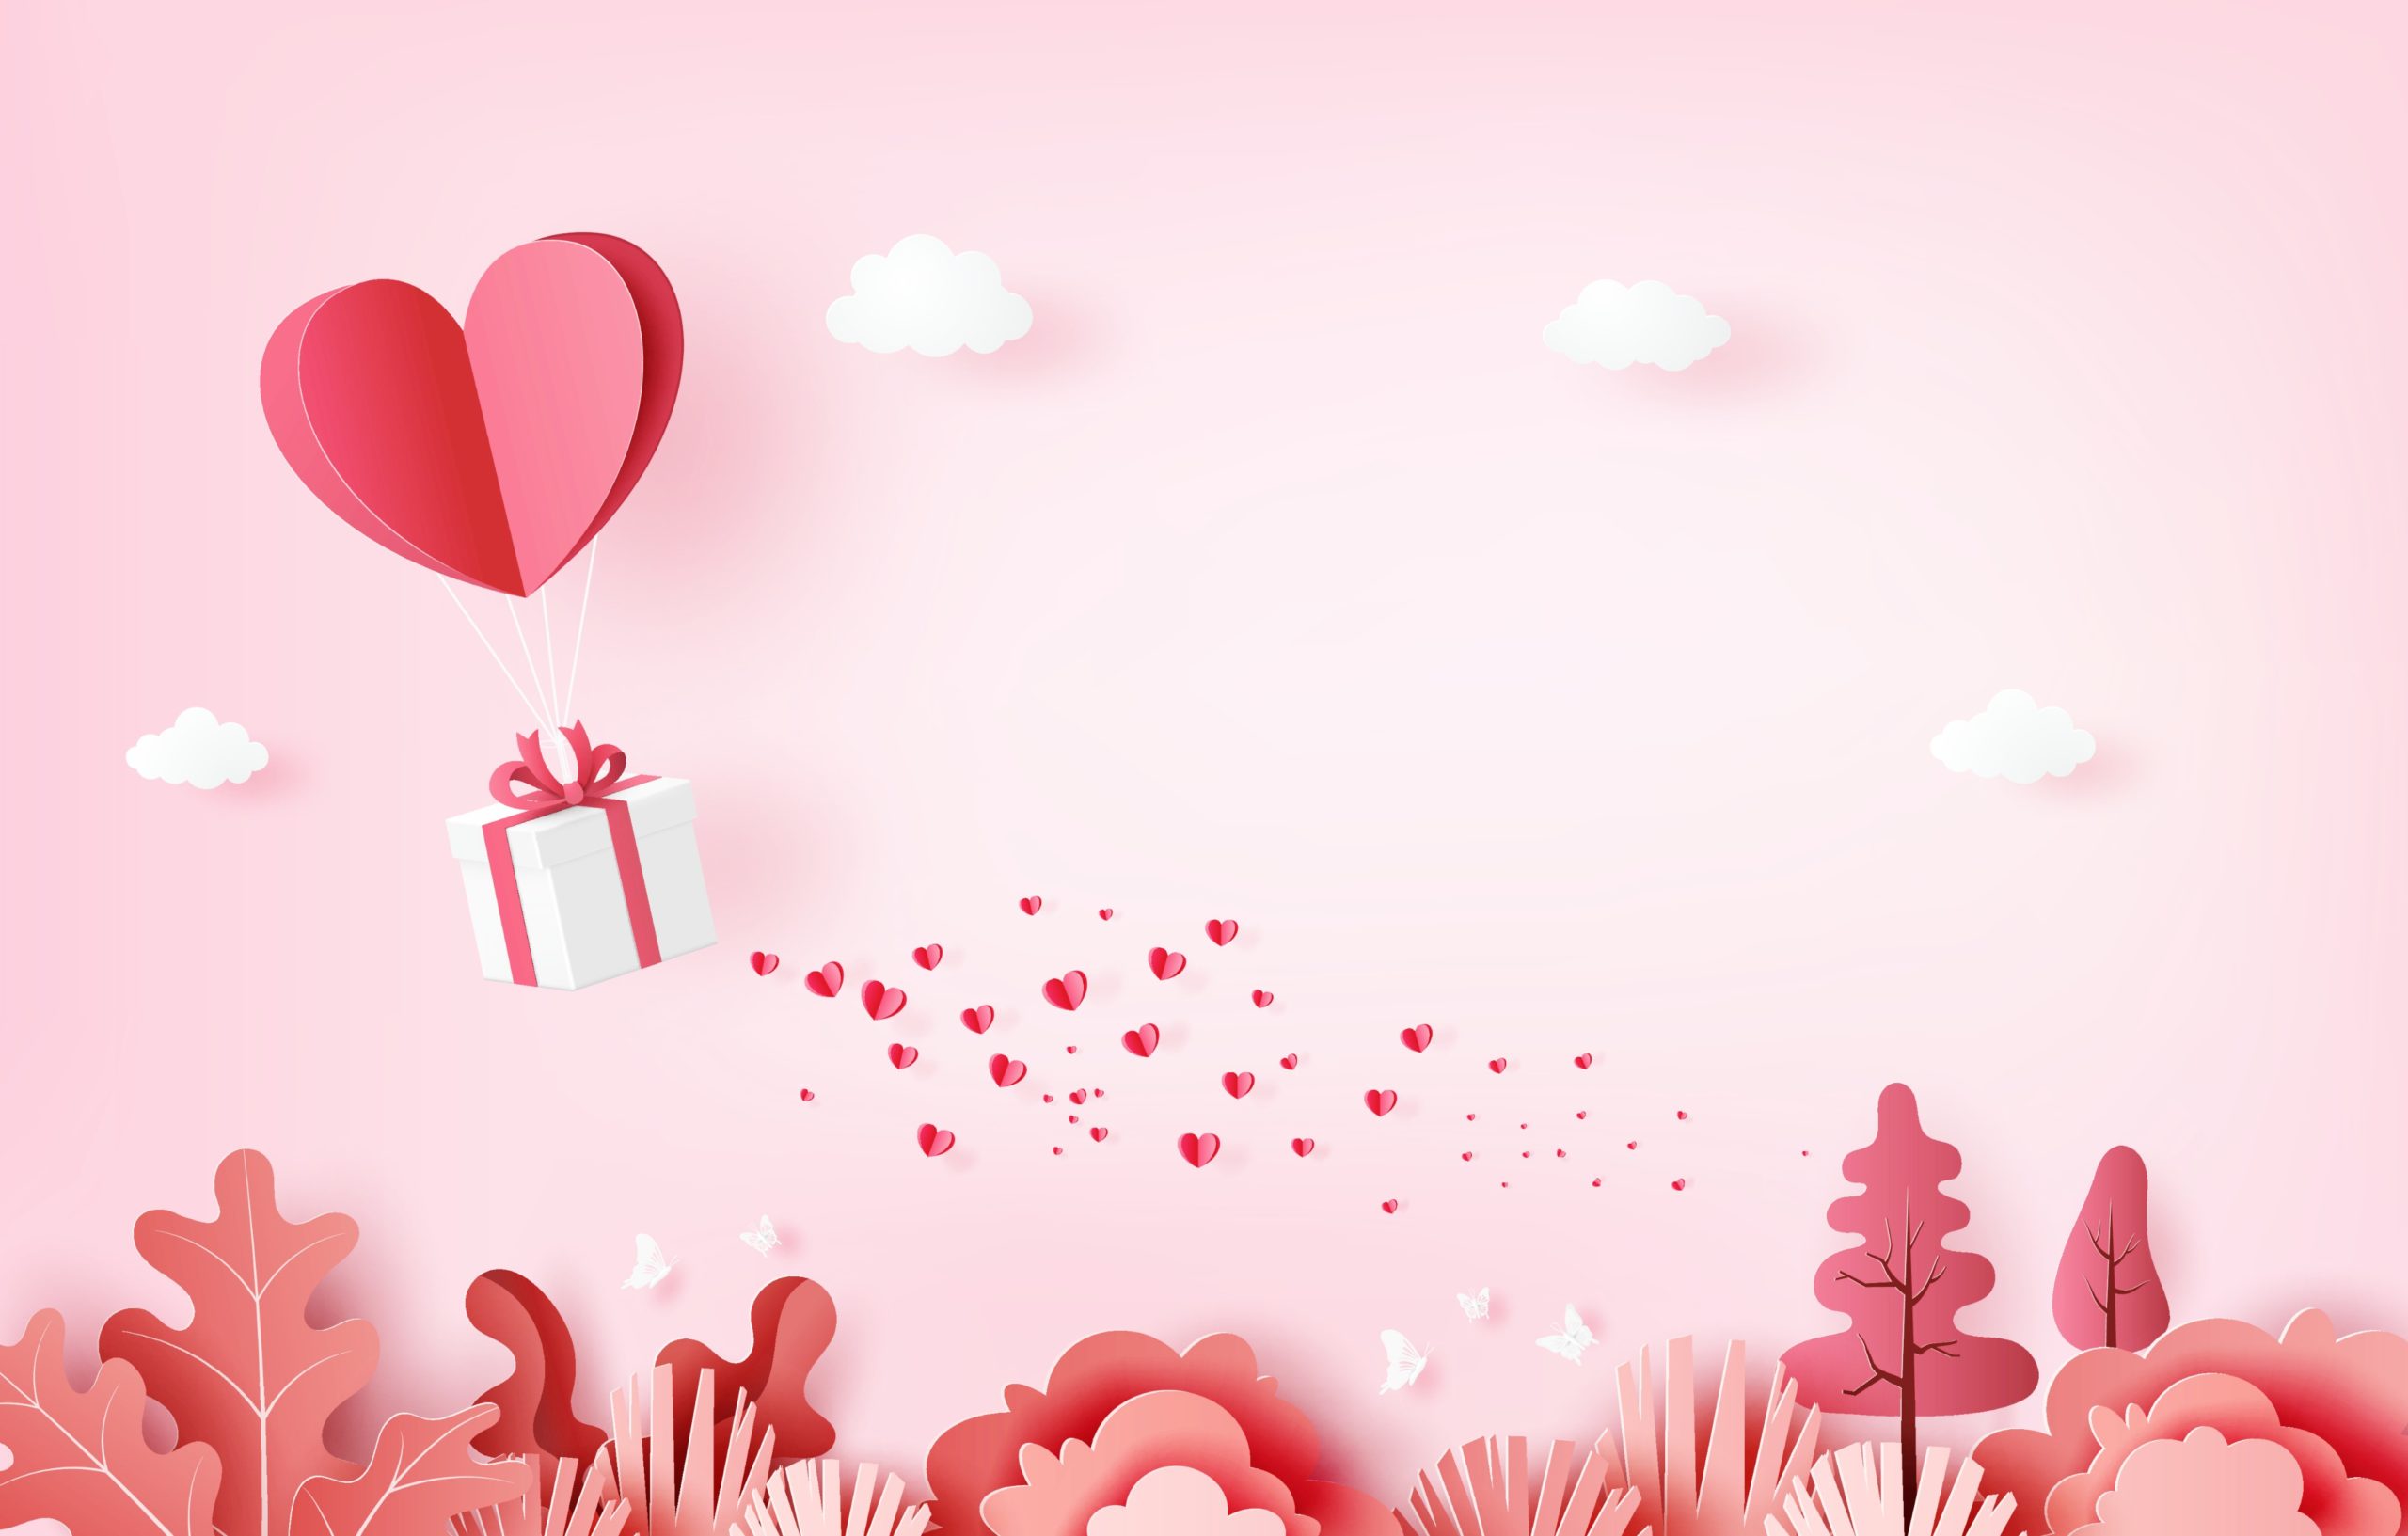 <img src="valentines.jpg" alt="valentines day heart balloon"/> 